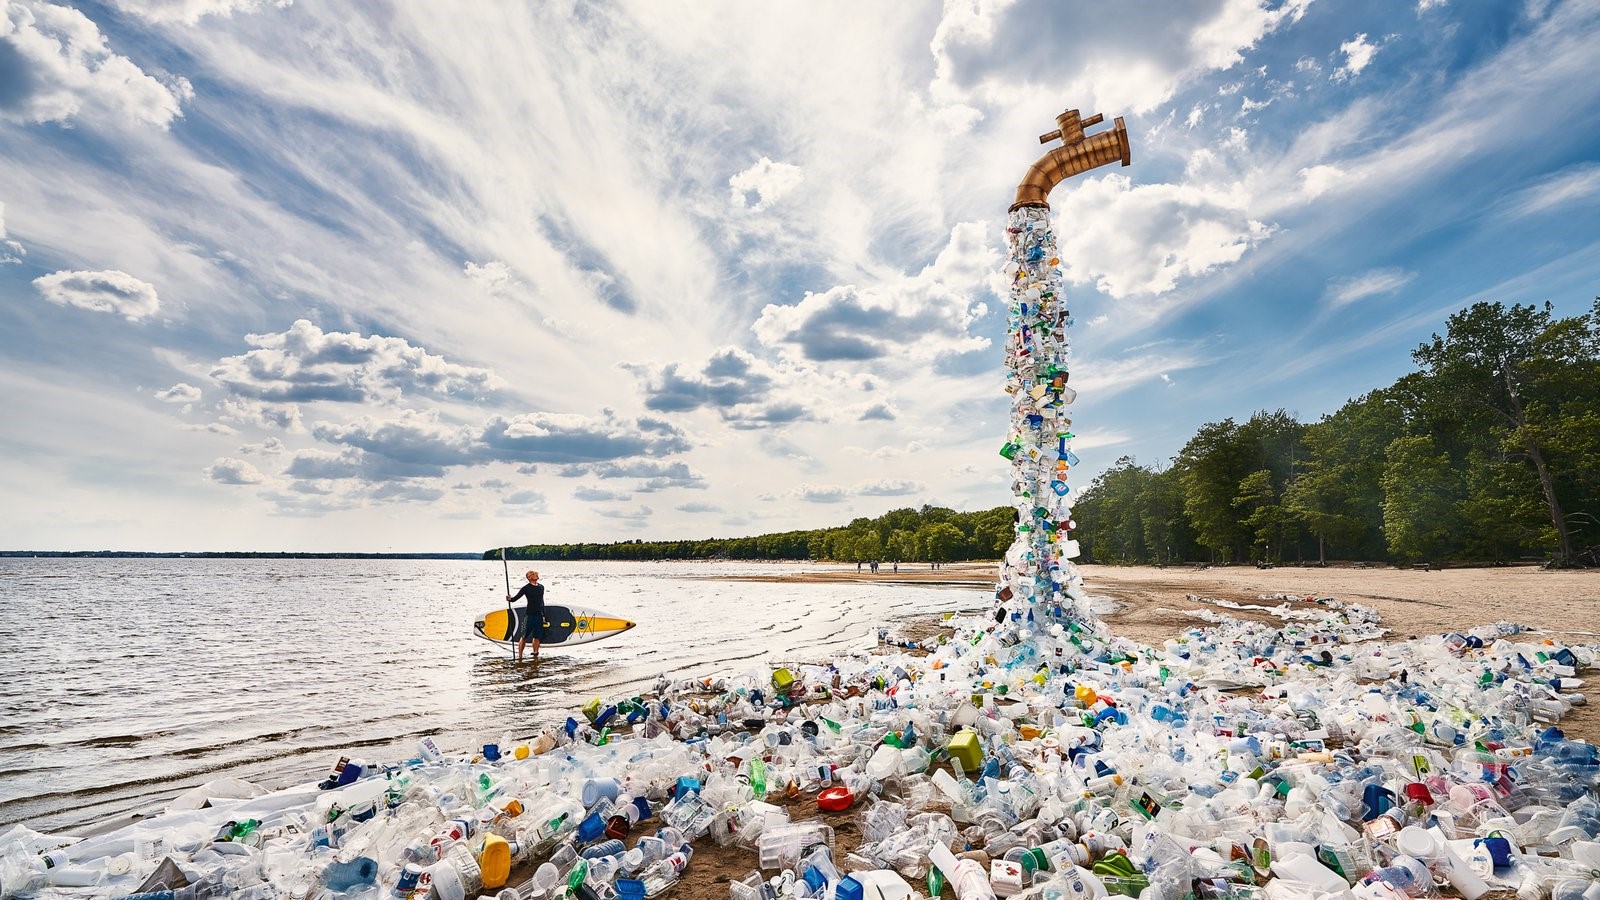 Ô nhiễm nhựa là một trong những mối đe dọa môi trường lớn nhất mà chúng ta hiện đang phải đối mặt